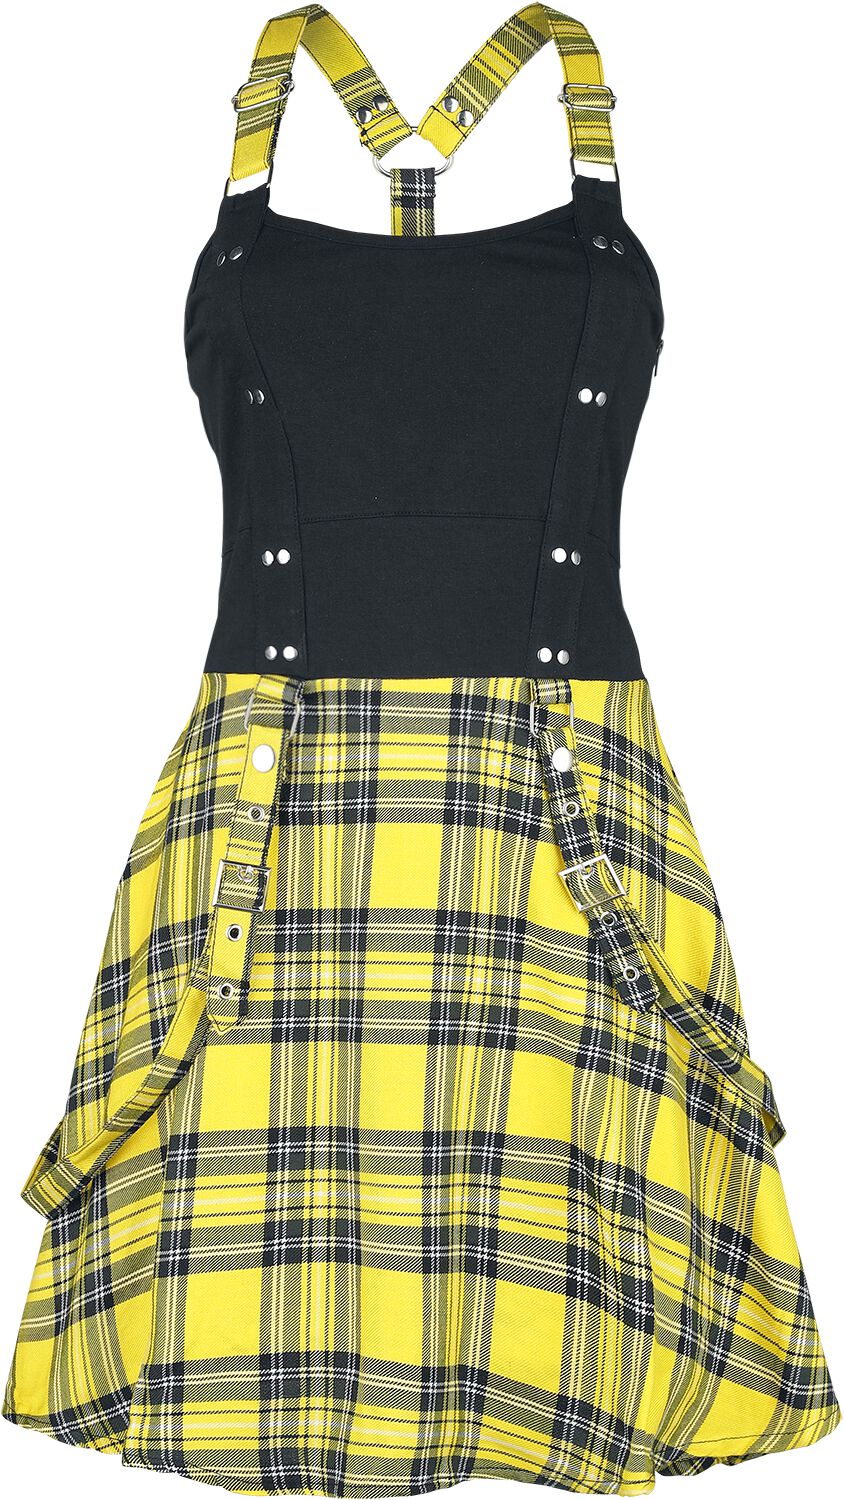 Heartless Kurzes Kleid - Incantation Dress - XS bis 4XL - für Damen - Größe S - schwarz/gelb